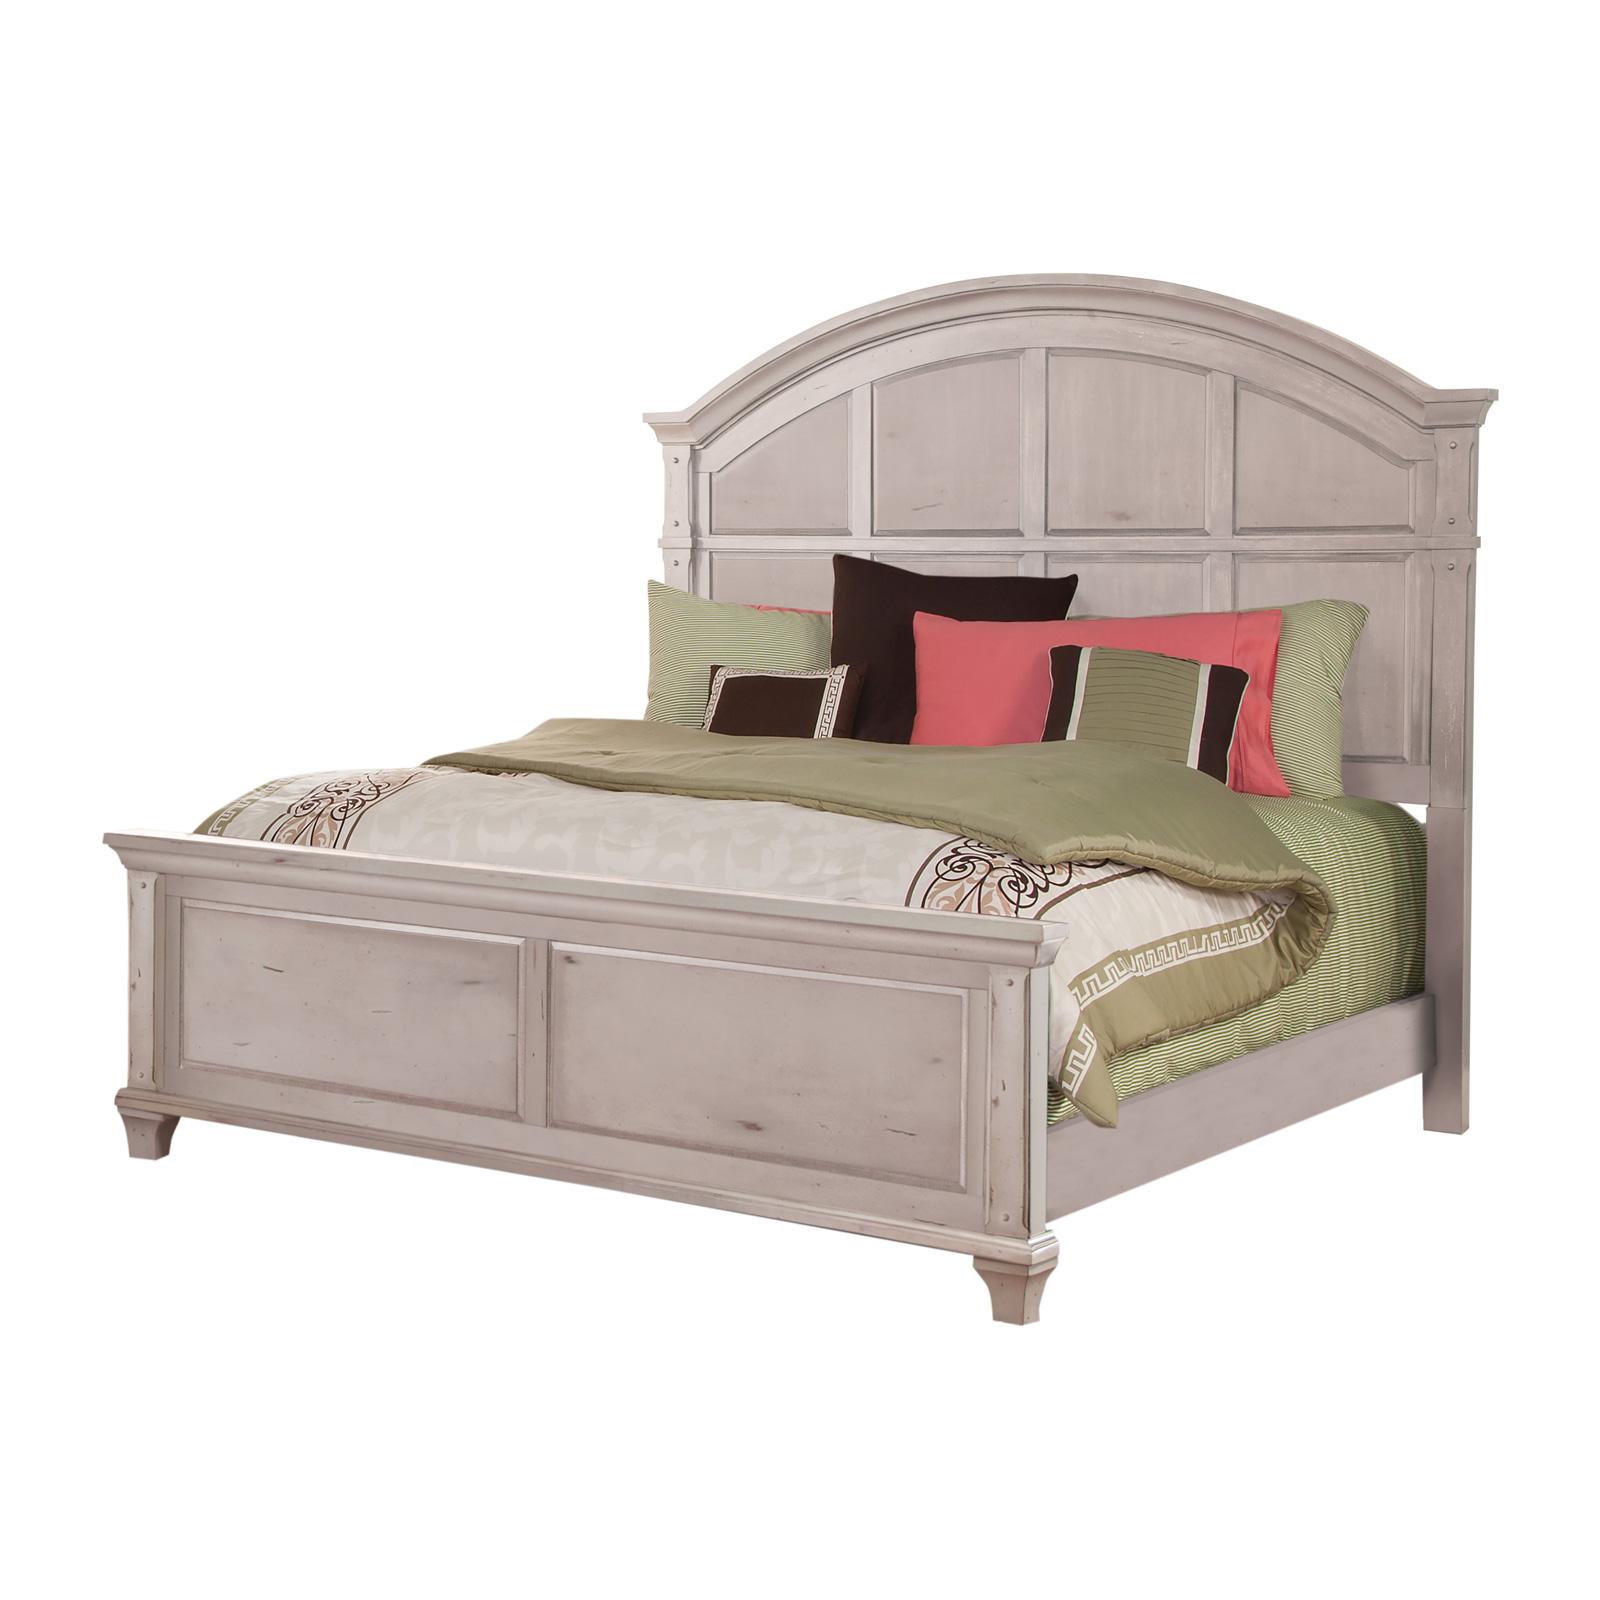 Classic, Traditional Panel Bed SEDONA 2410-50PBC 2410-50PBC in Cobblestone, White 